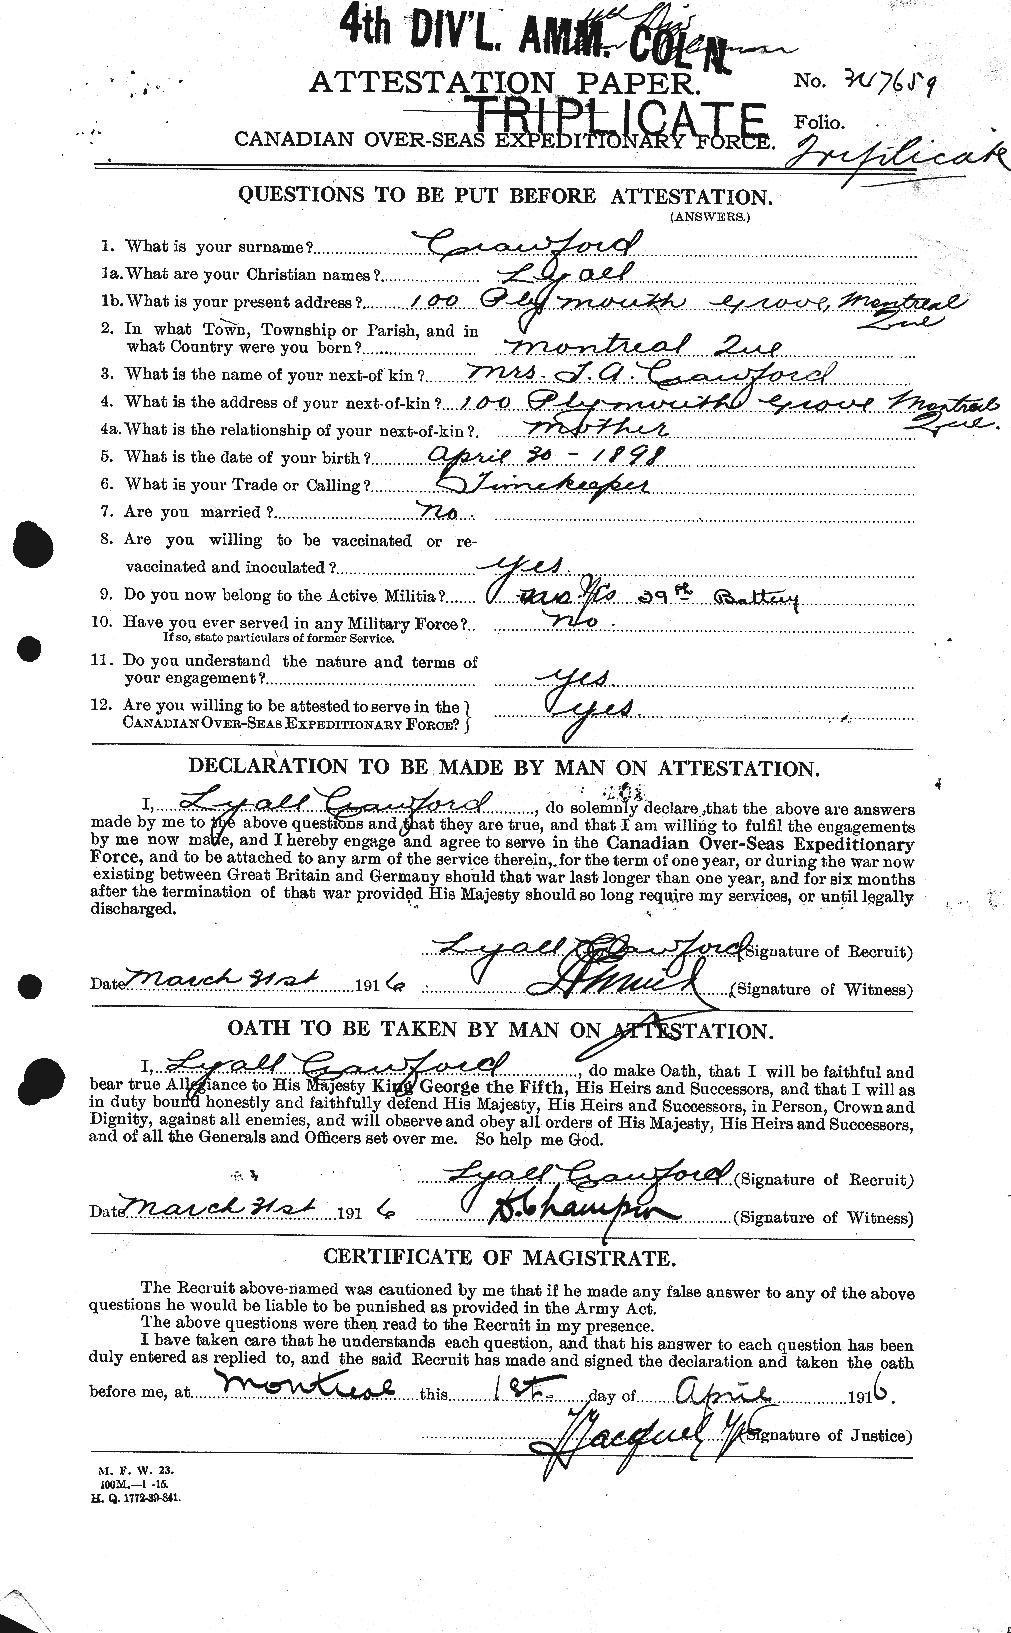 Dossiers du Personnel de la Première Guerre mondiale - CEC 061787a